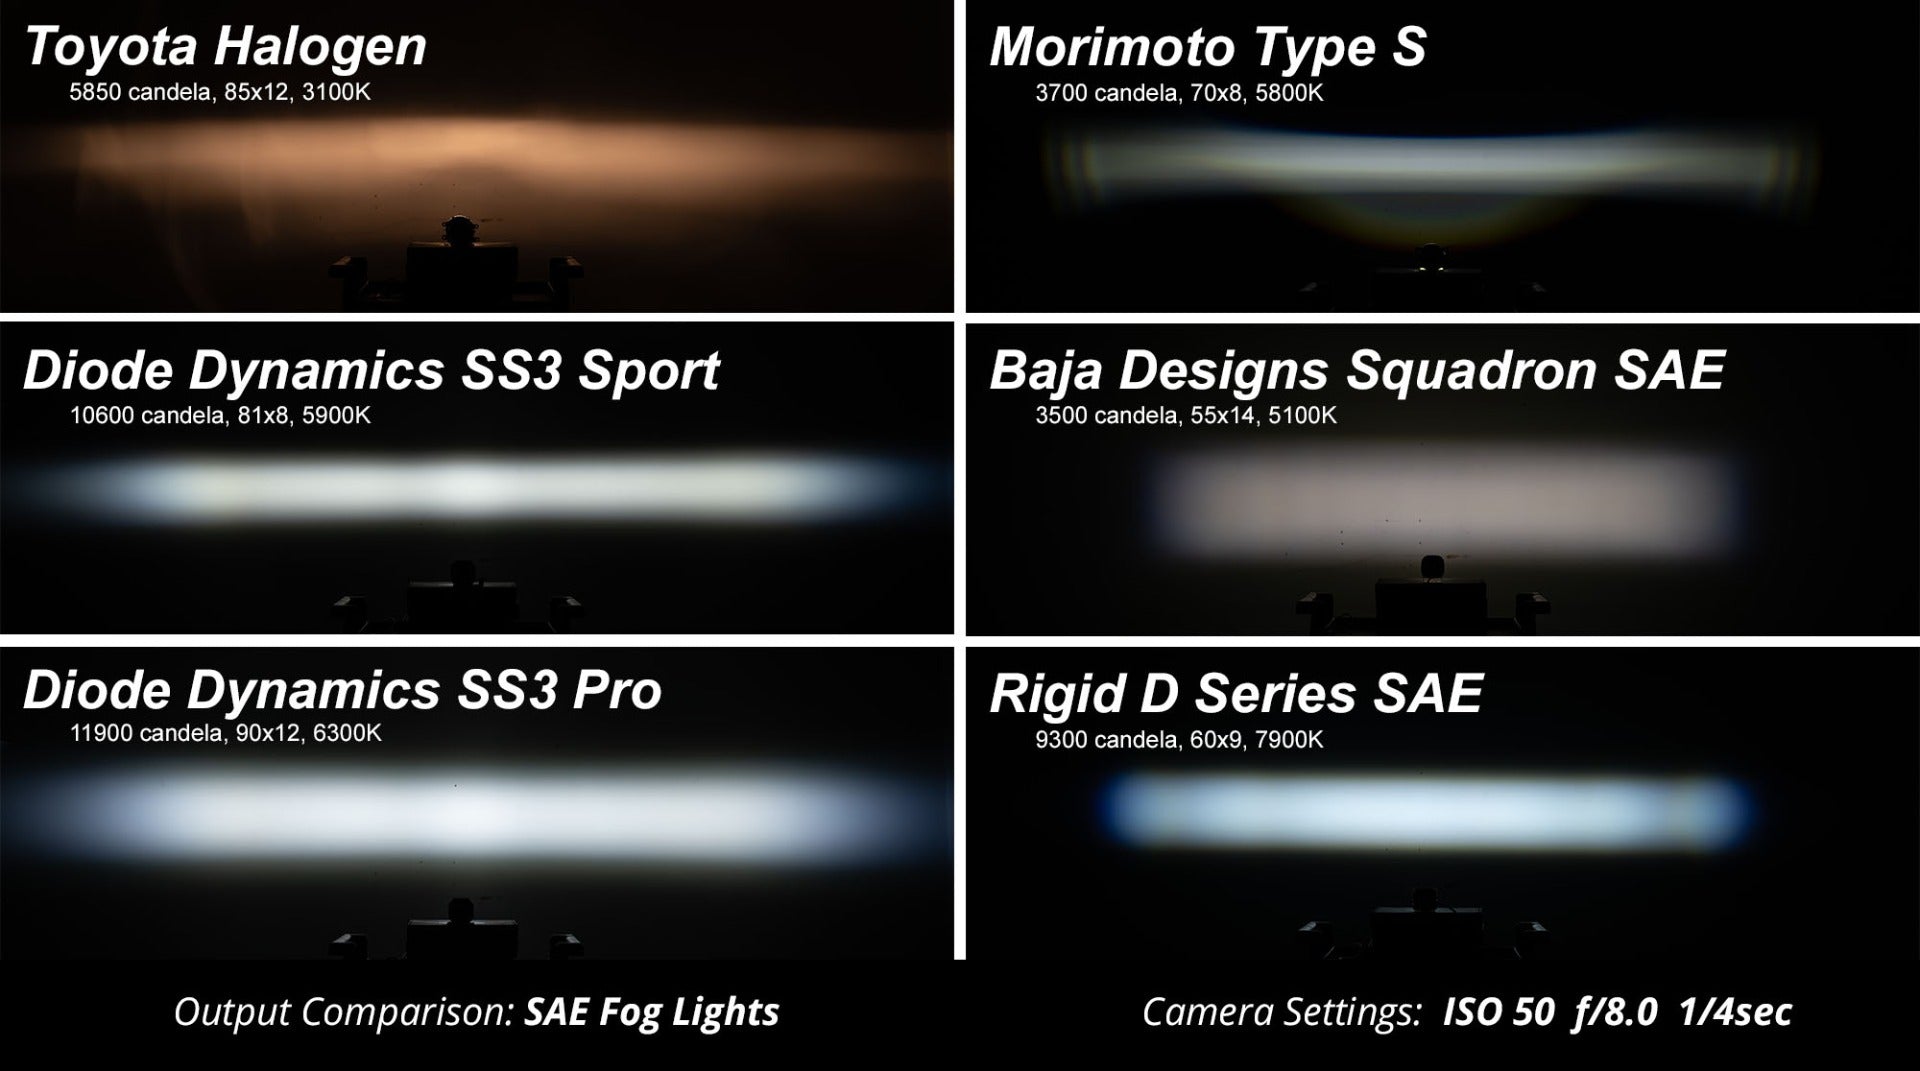 SS3 LED Fog Light Kit for 2008-2015 Lexus LX570 White SAE/DOT Driving Sport Diode Dynamics